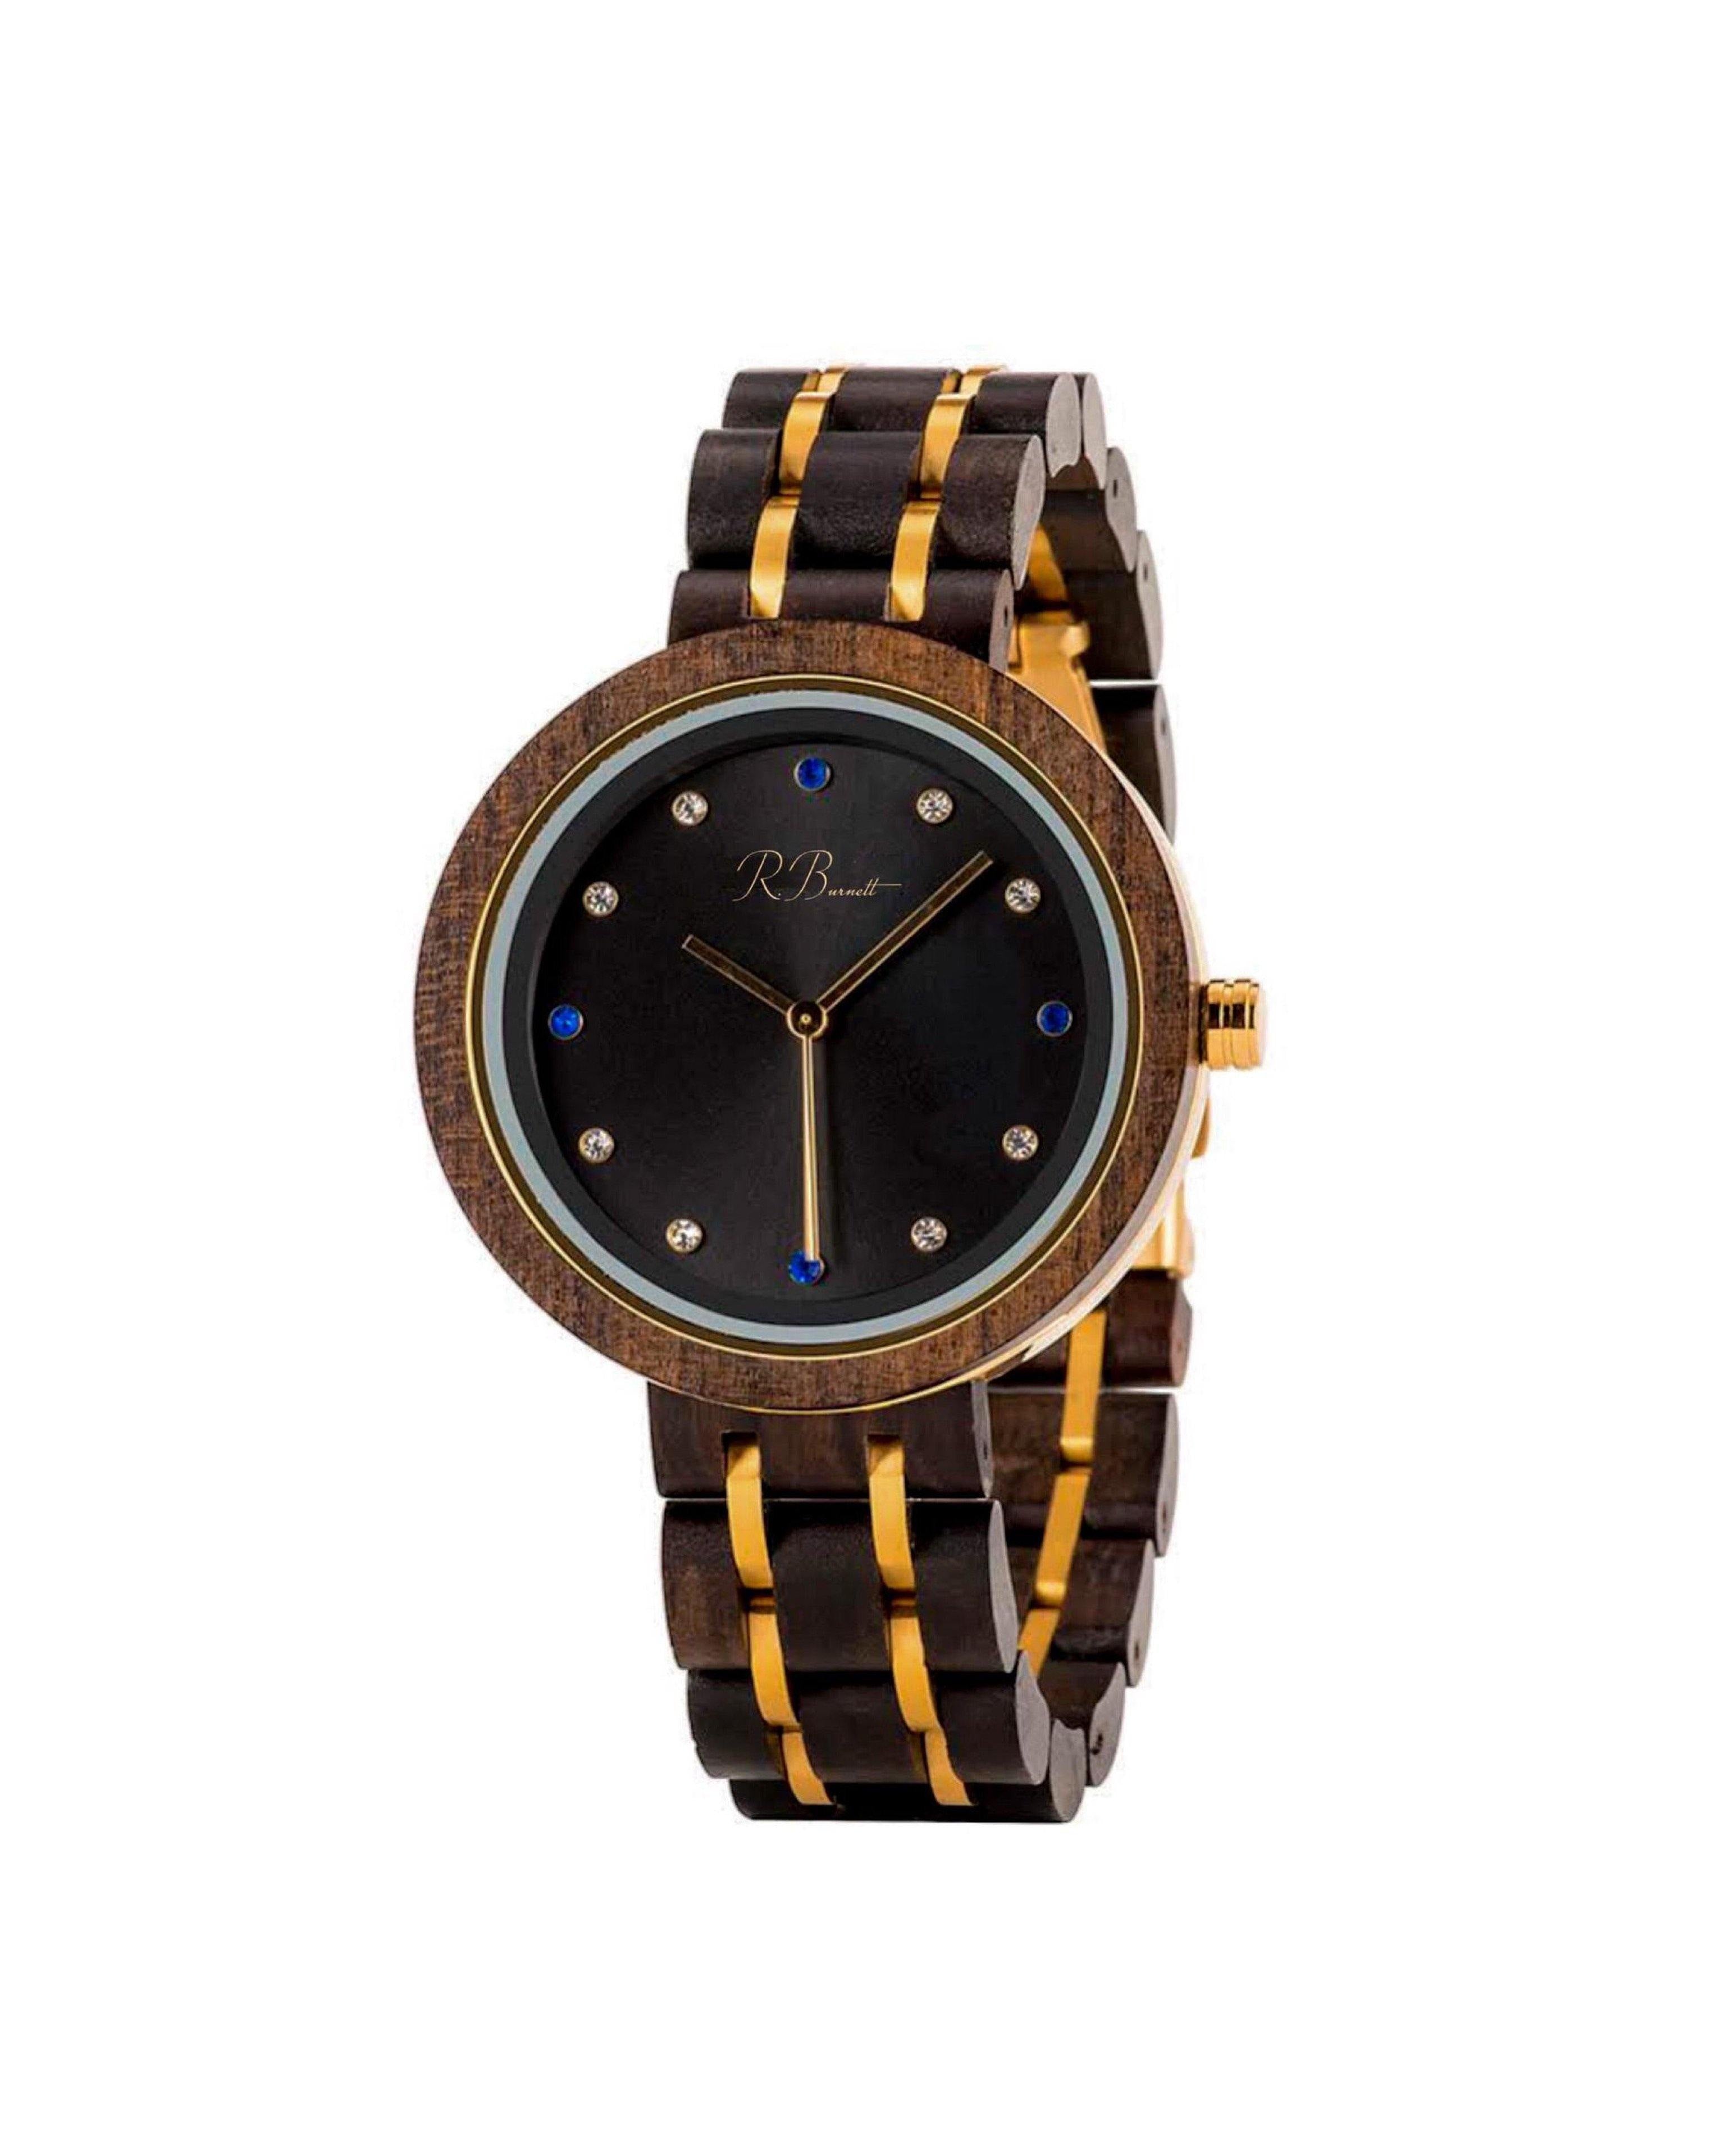 Premio - Wooden Watch - R. Burnett Brand